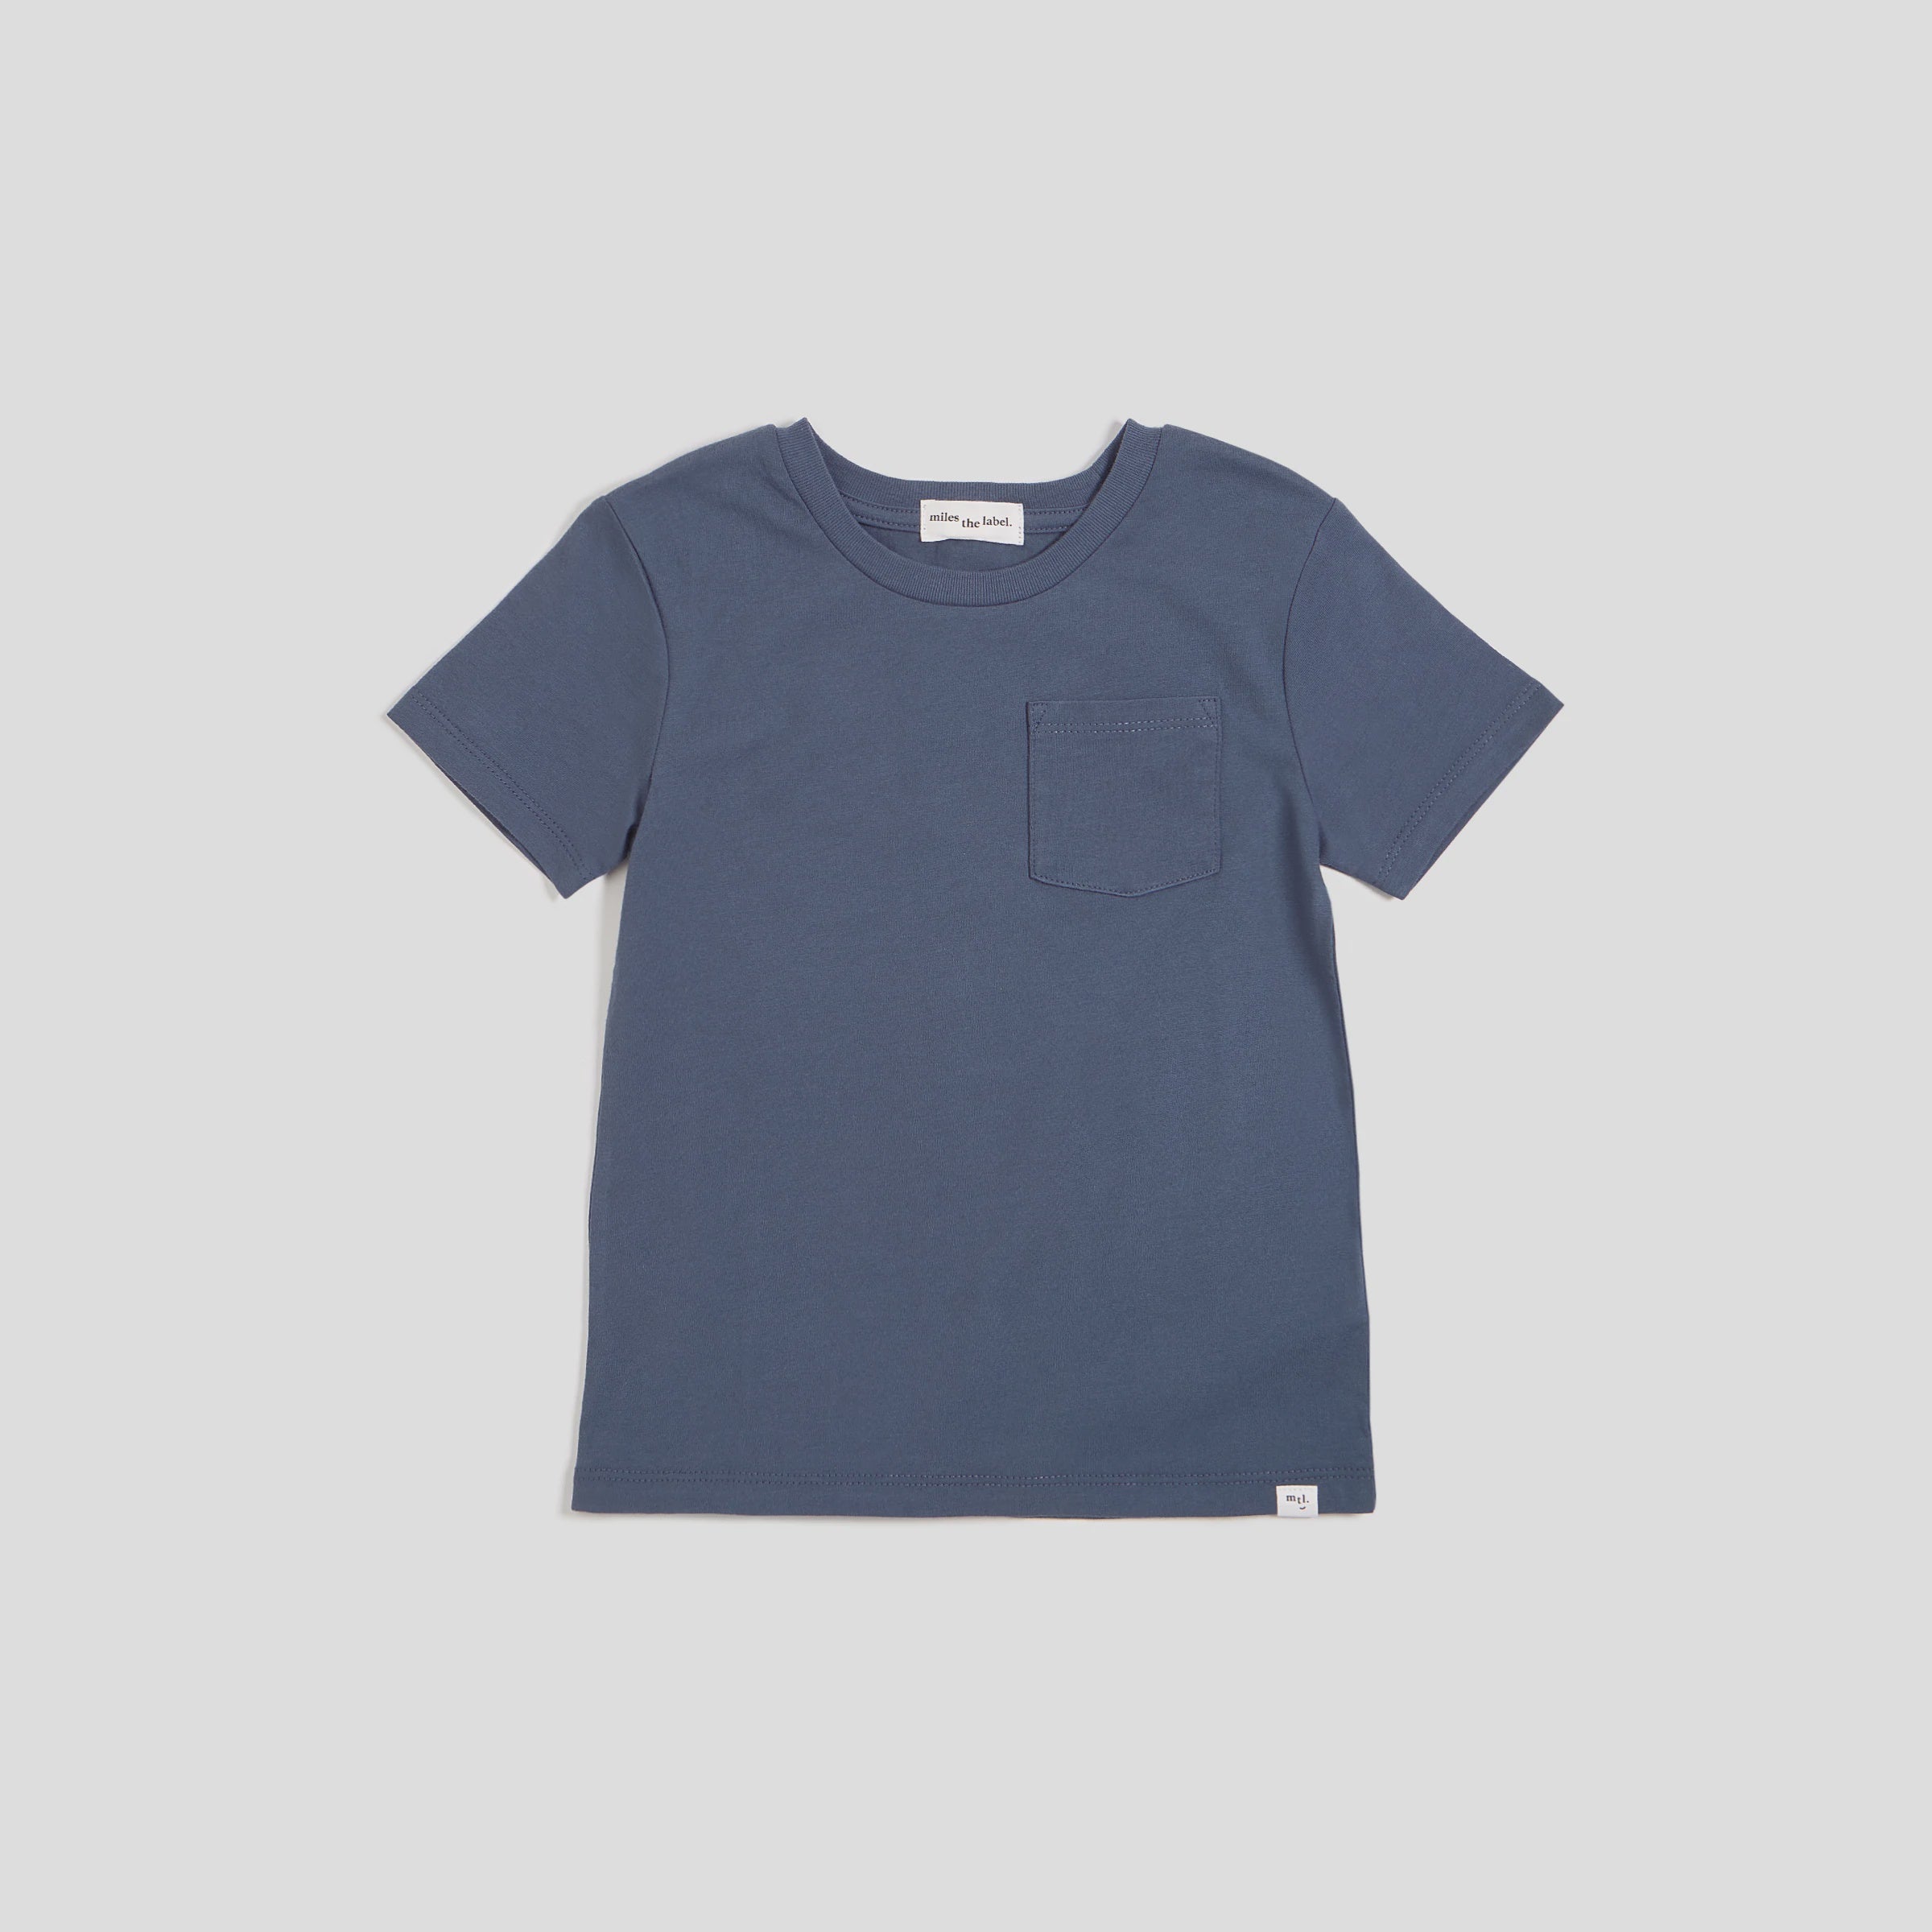 Dusty Blue Unisex Tshirt